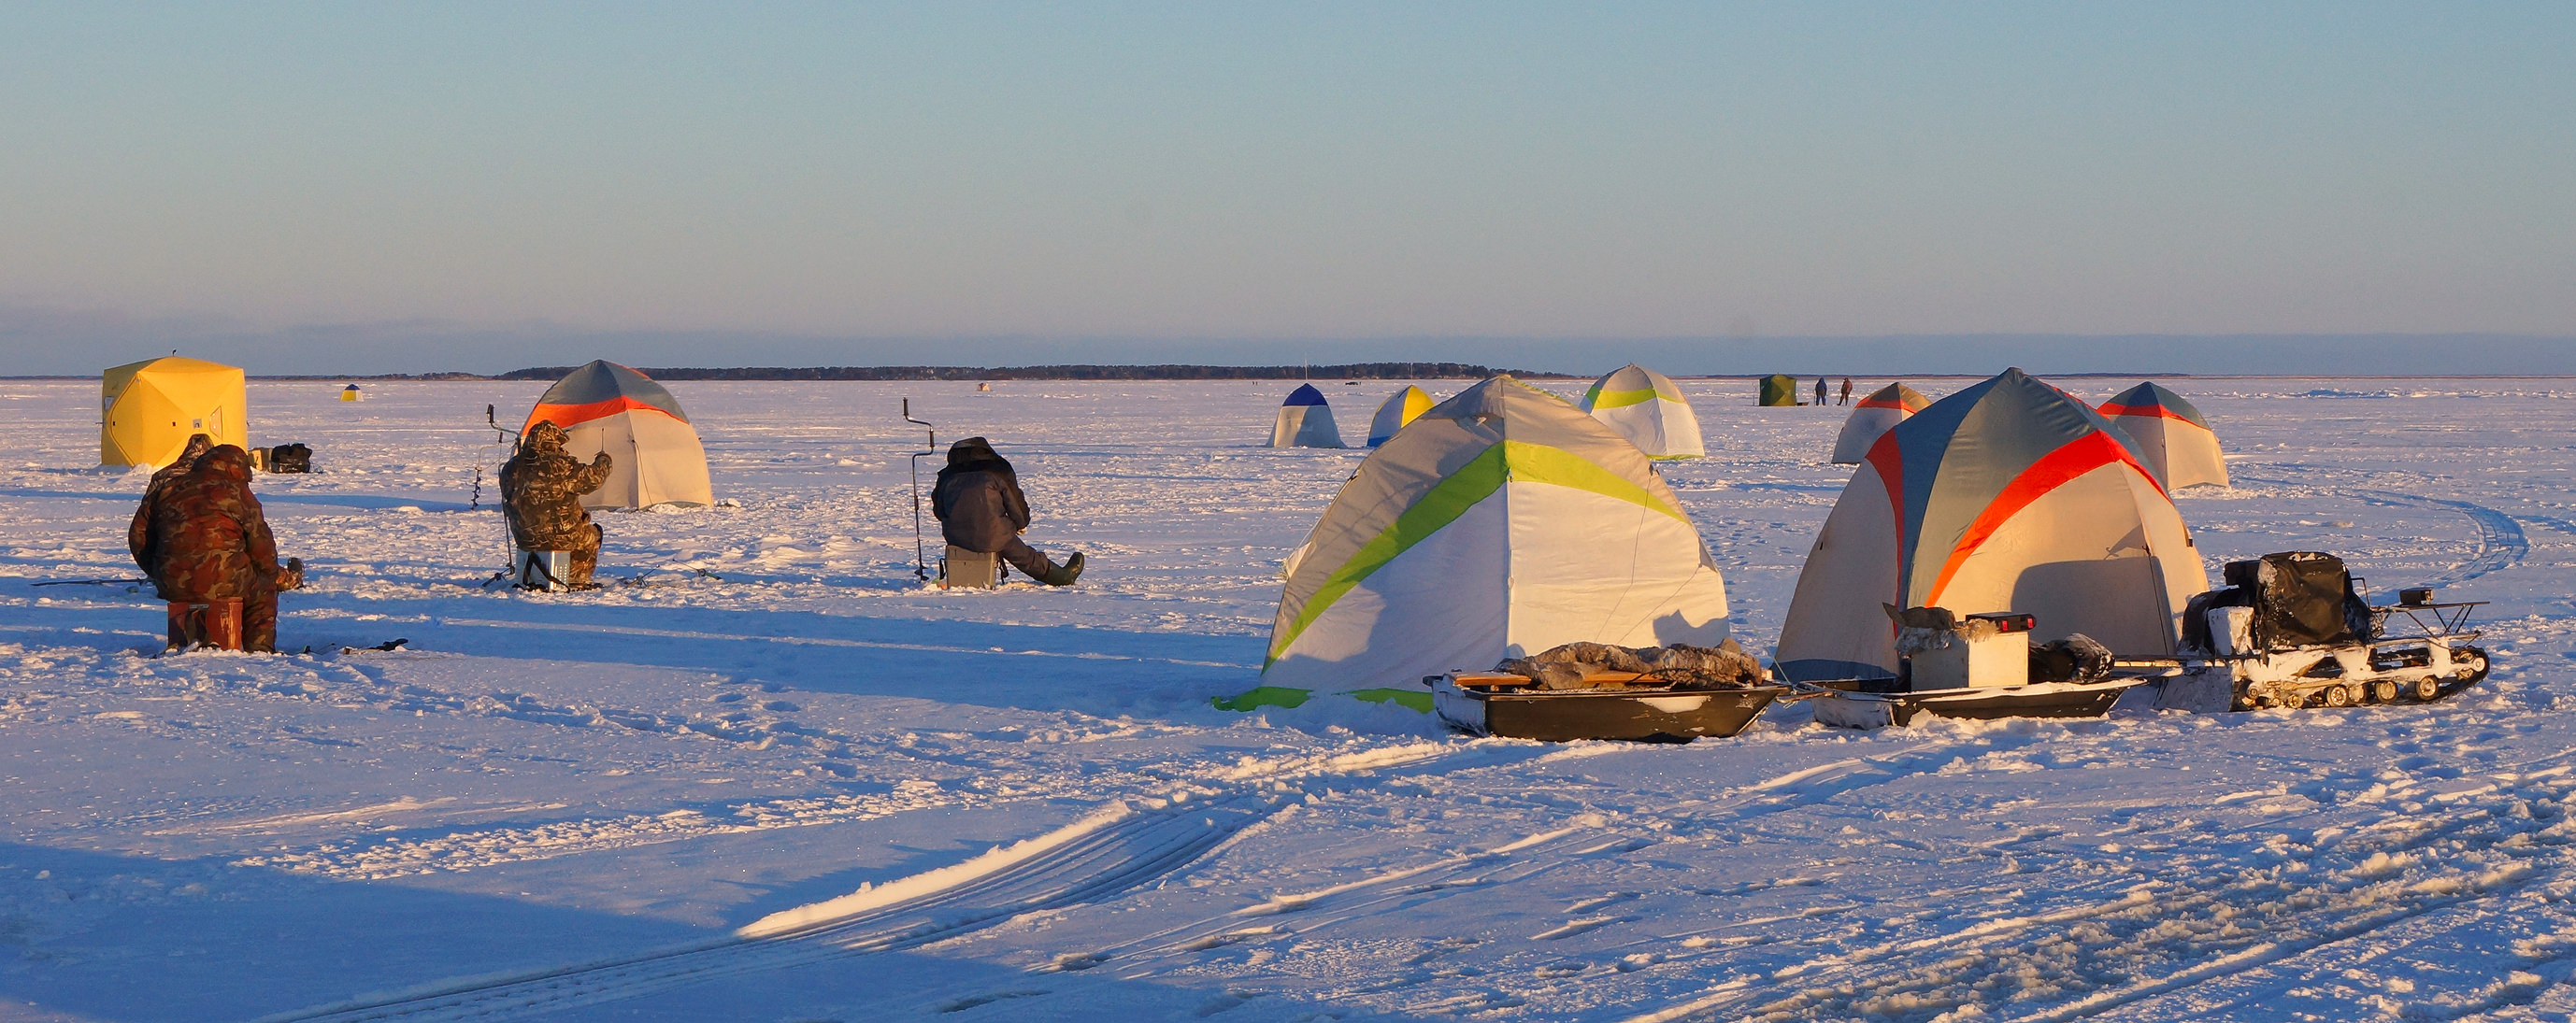 Форум на севере северодвинск. Ягры зимняя рыбалка на море. Рыбалка в дельте Северной Двины. Рыбалка на белом море зимой. Северная Двина с палатками.